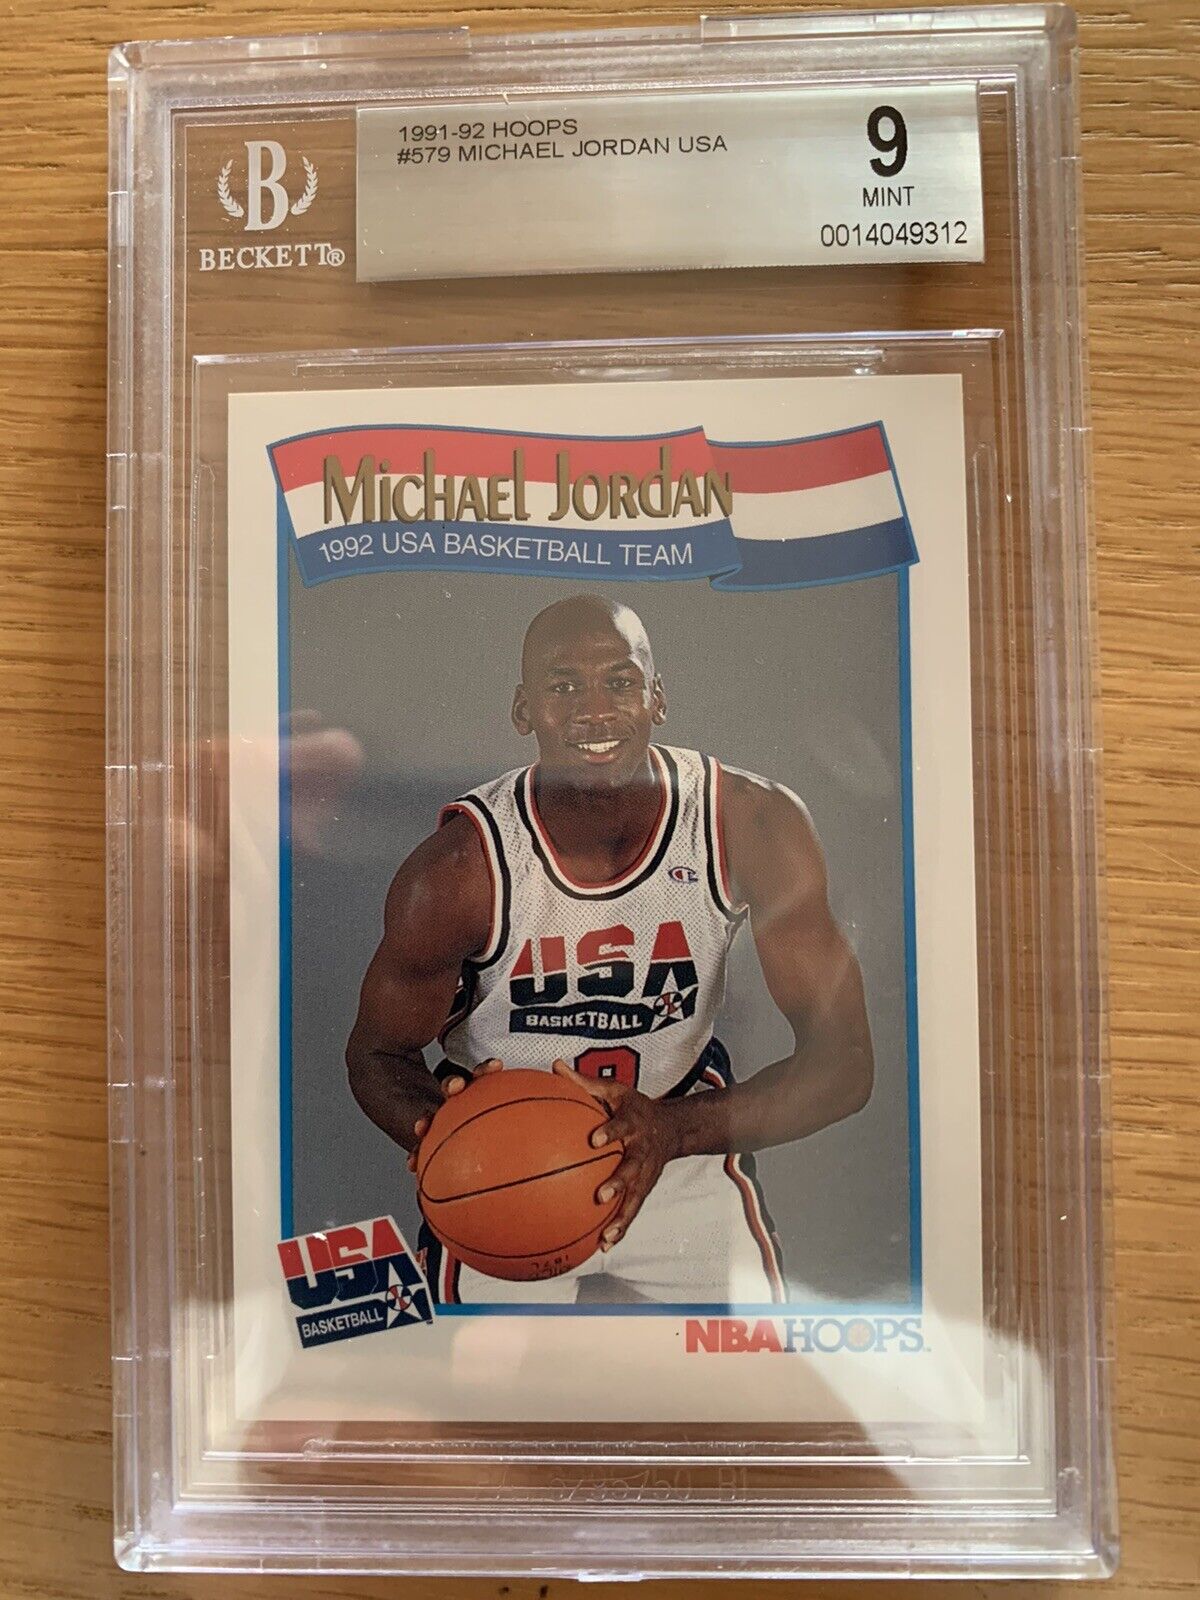 1991 Hoops Michael Jordan #579 USA Basketball Dream Team BGS 9.0 Mint